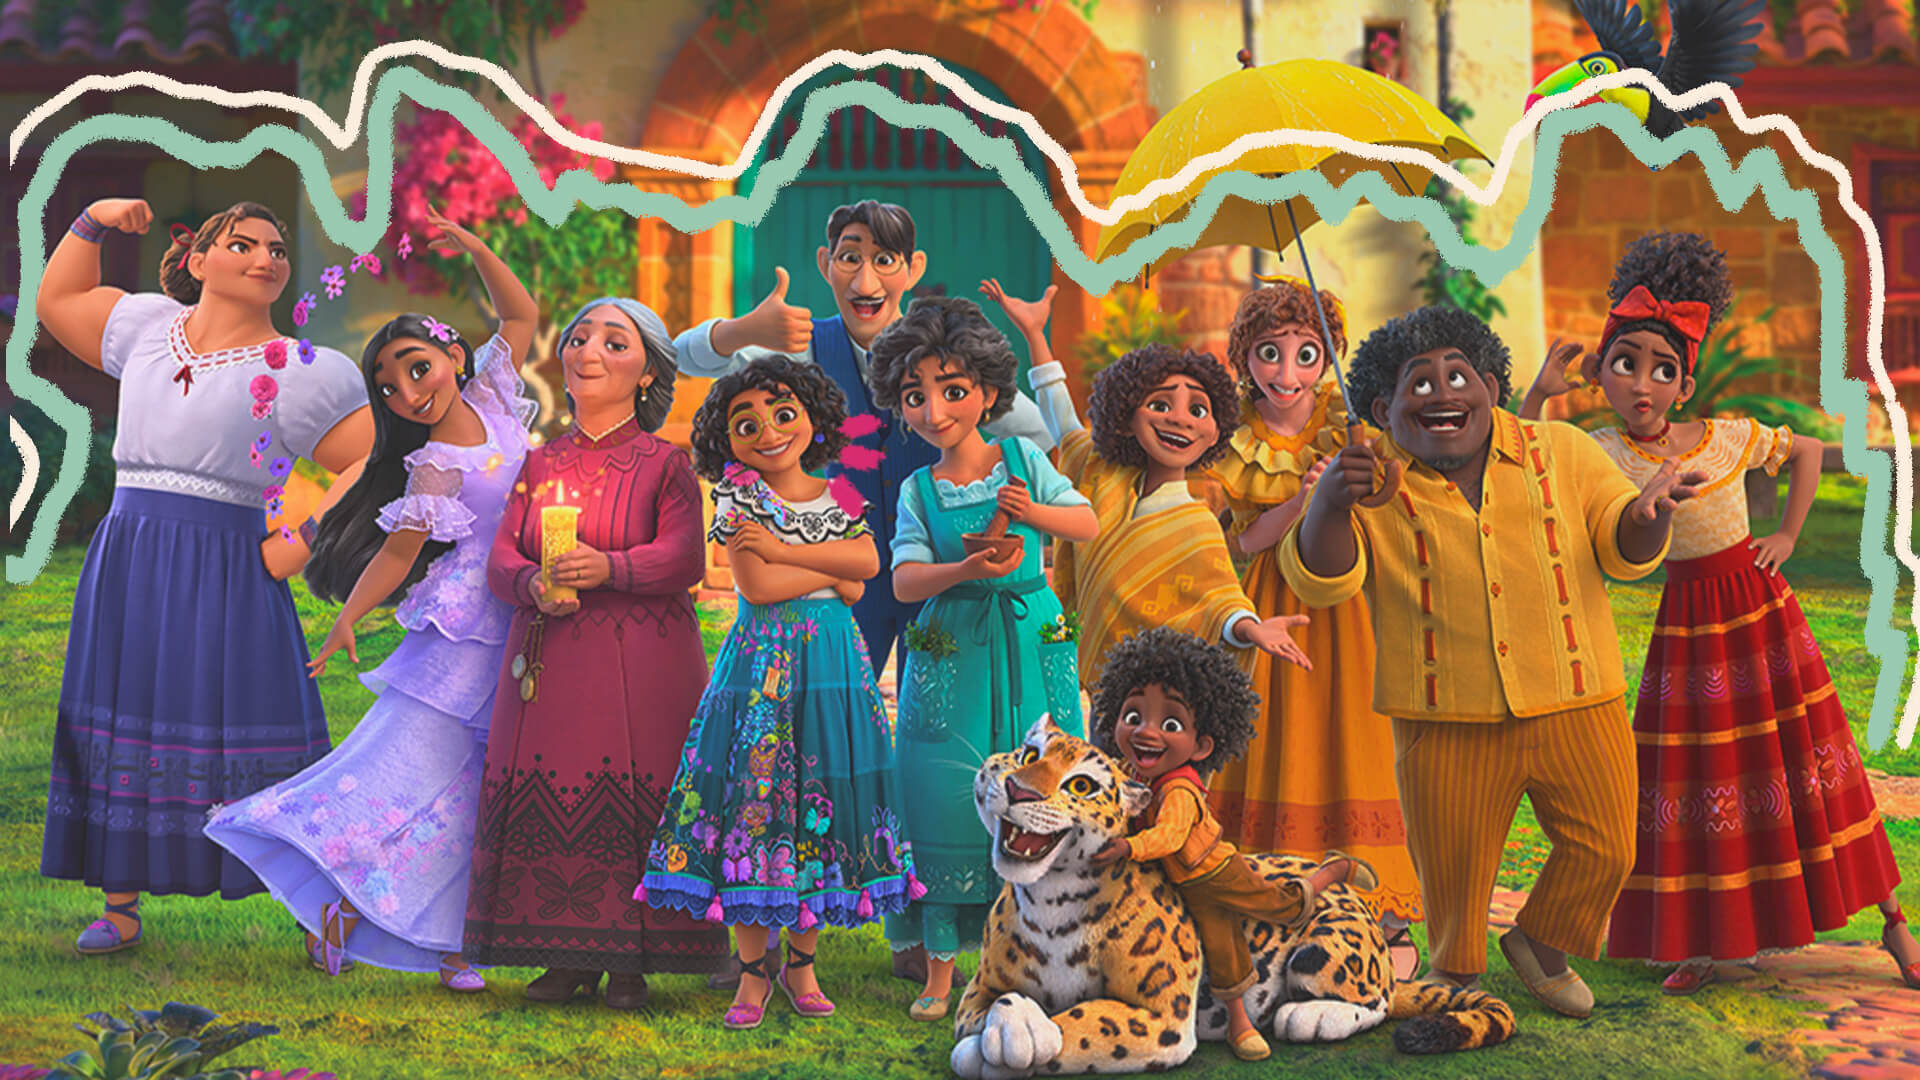 Na foto, família Madrigal no filme Encanto. A imagem possui intervenções de rabiscos coloridos.